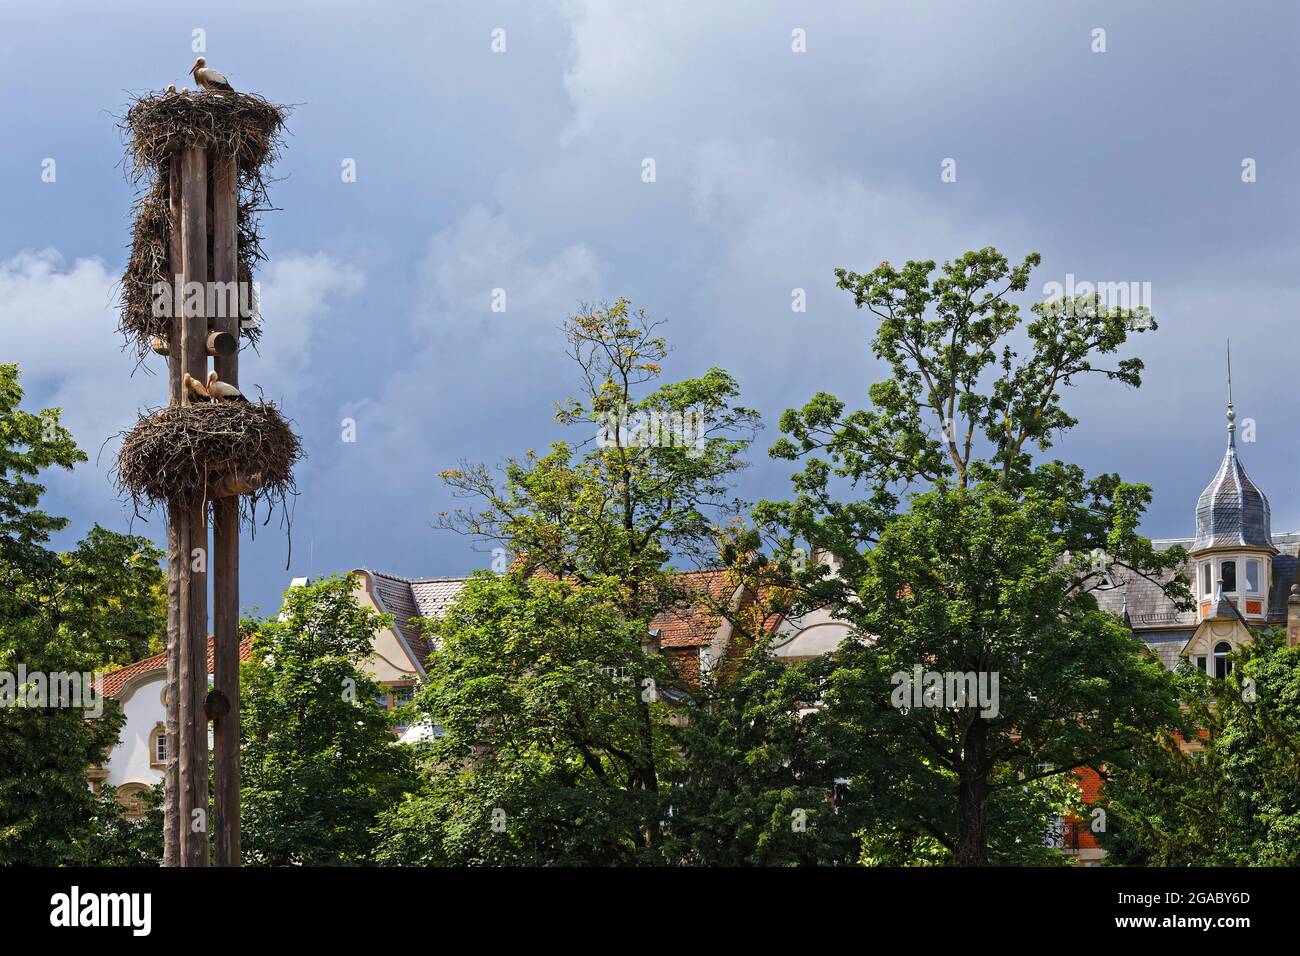 Cicogne e il loro nido a Strasburgo. Cicogne sono il simbolo della regione dell'Alsazia. Foto Stock